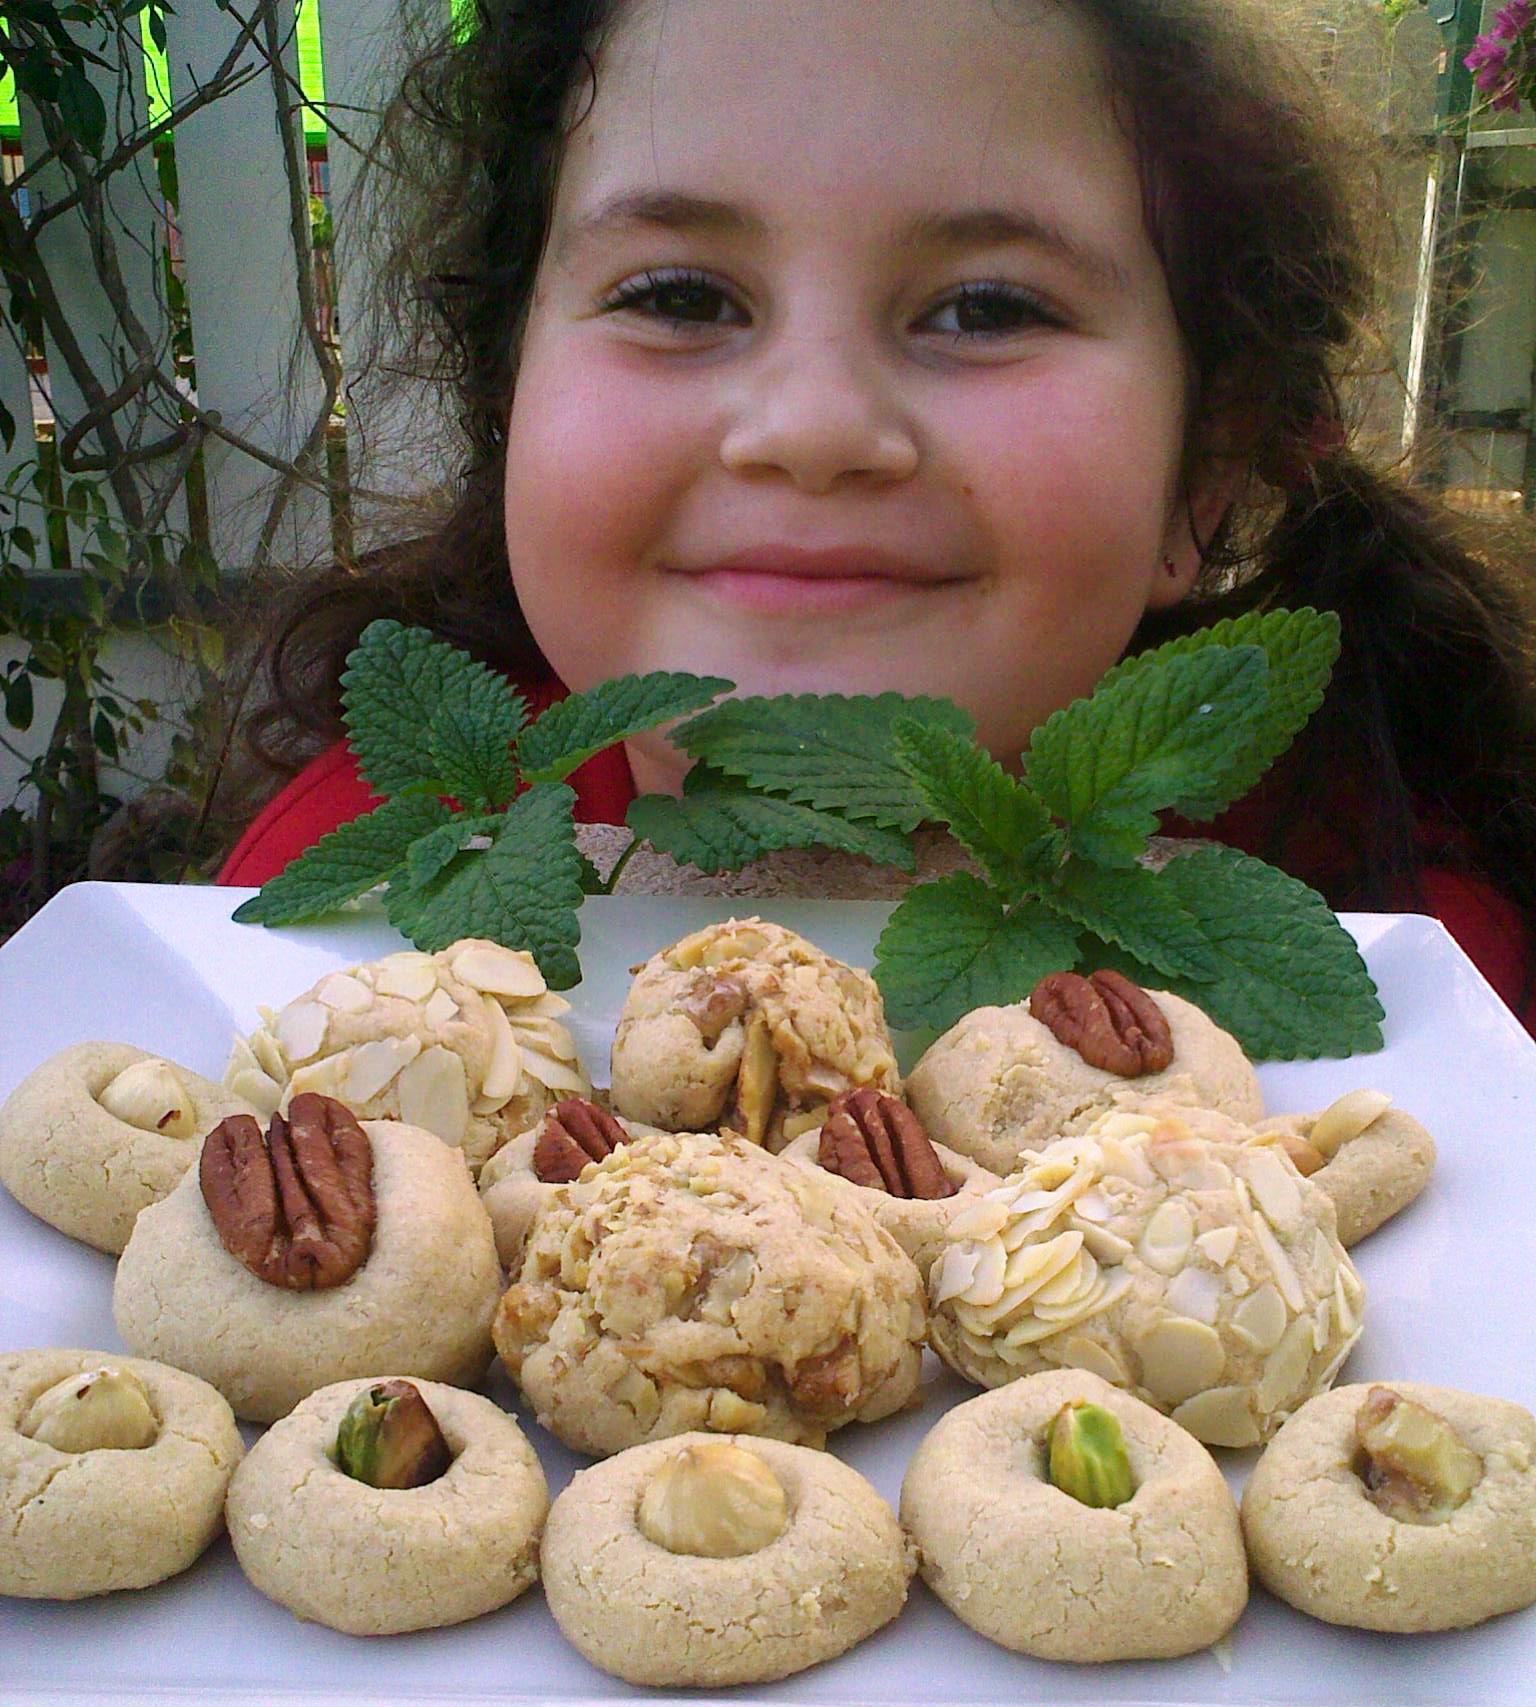 סדנאות בישול לילדים של שוקוהוליק, שביט בת שבע מציגה עוגיות חלבה נימוחות